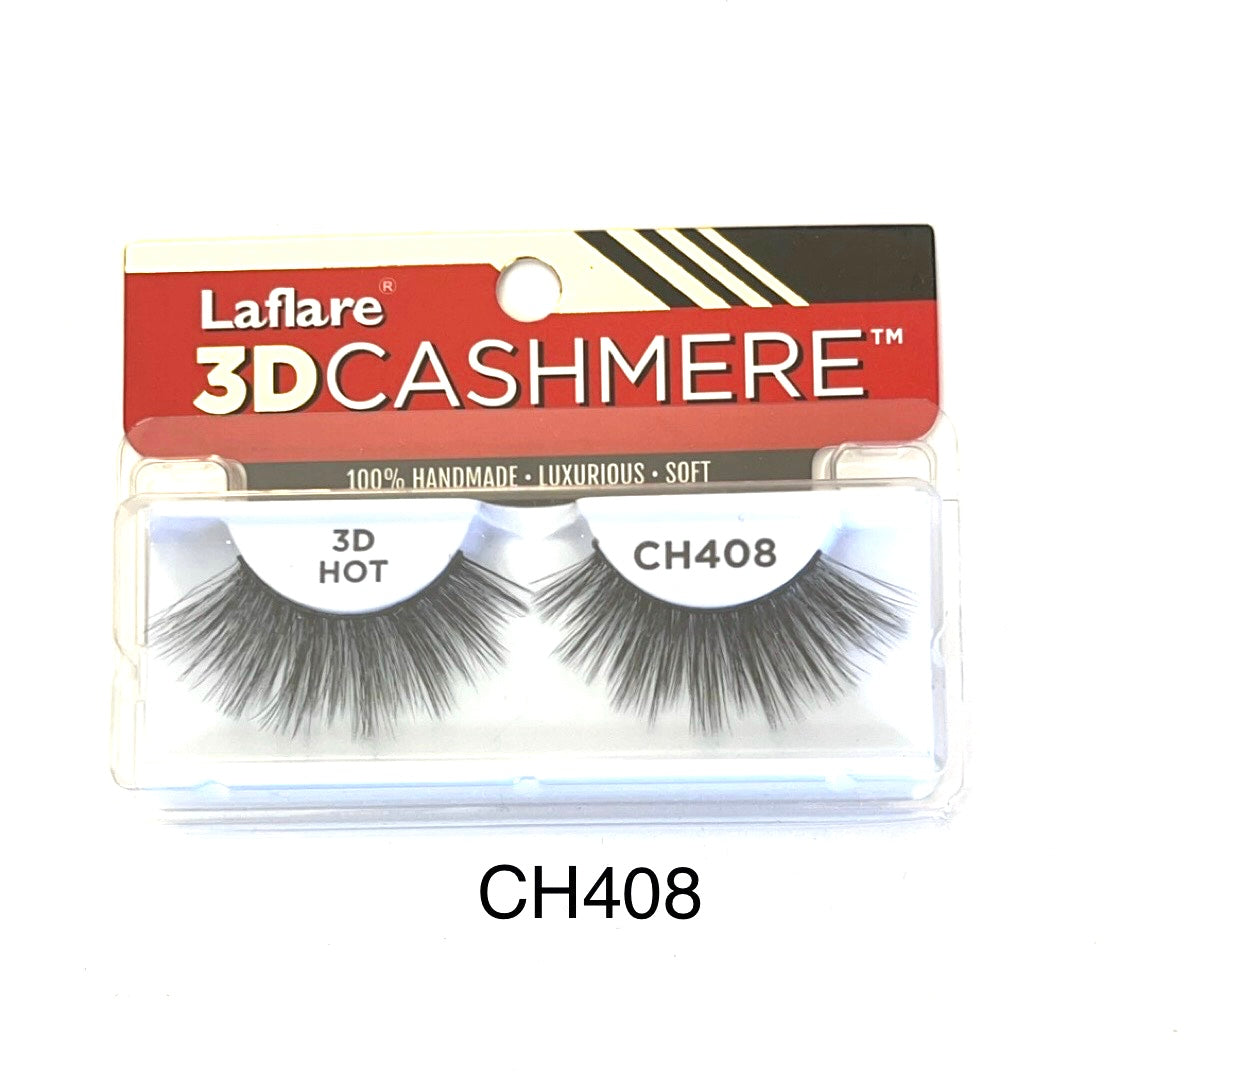 Laflare 3D Cashmere CH408